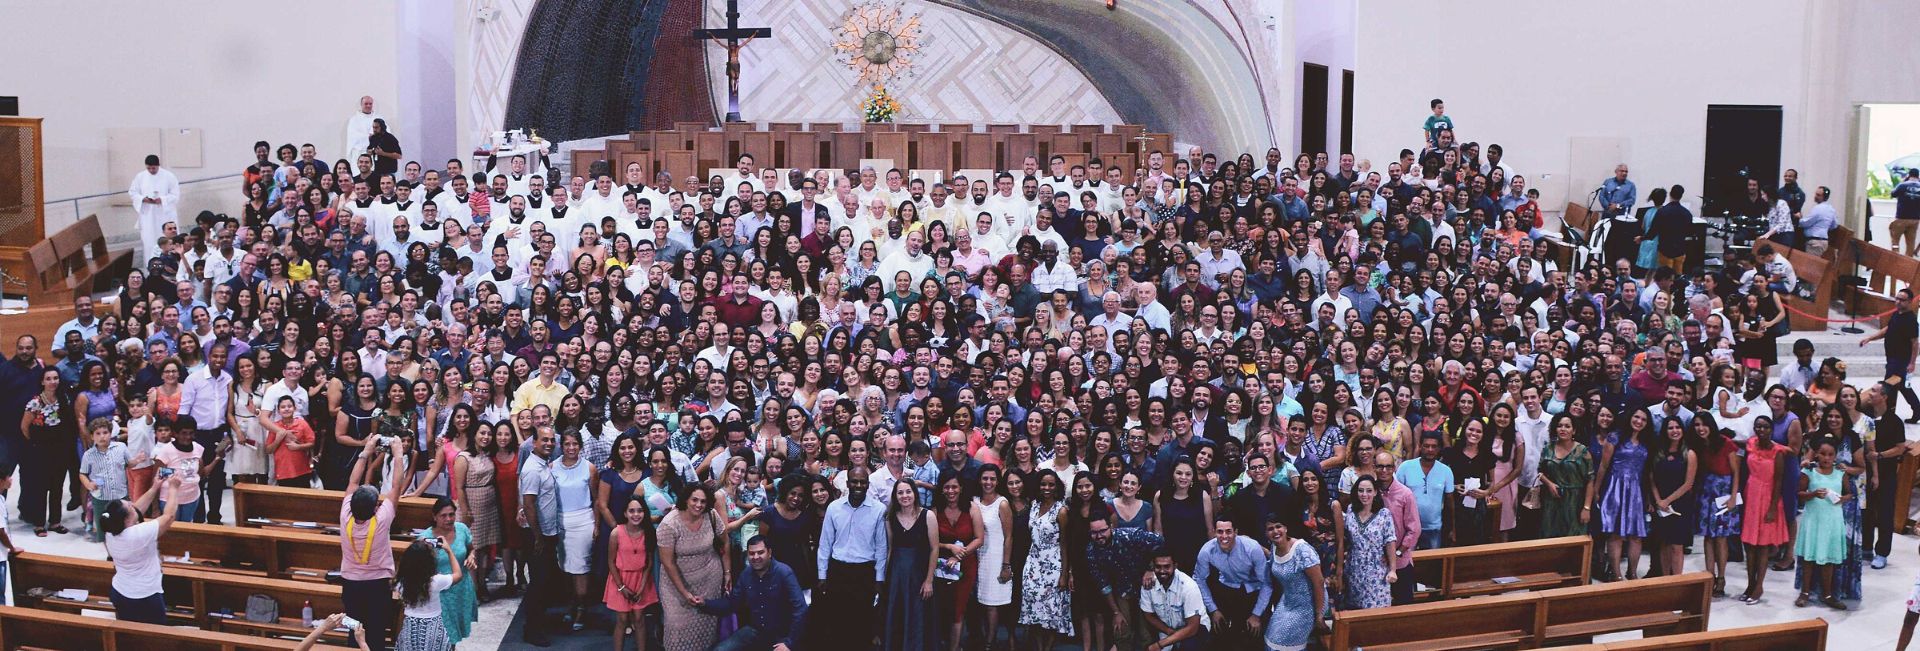 CANÇÃO NOVA - Un dono al servizio dell'evangelizzazione